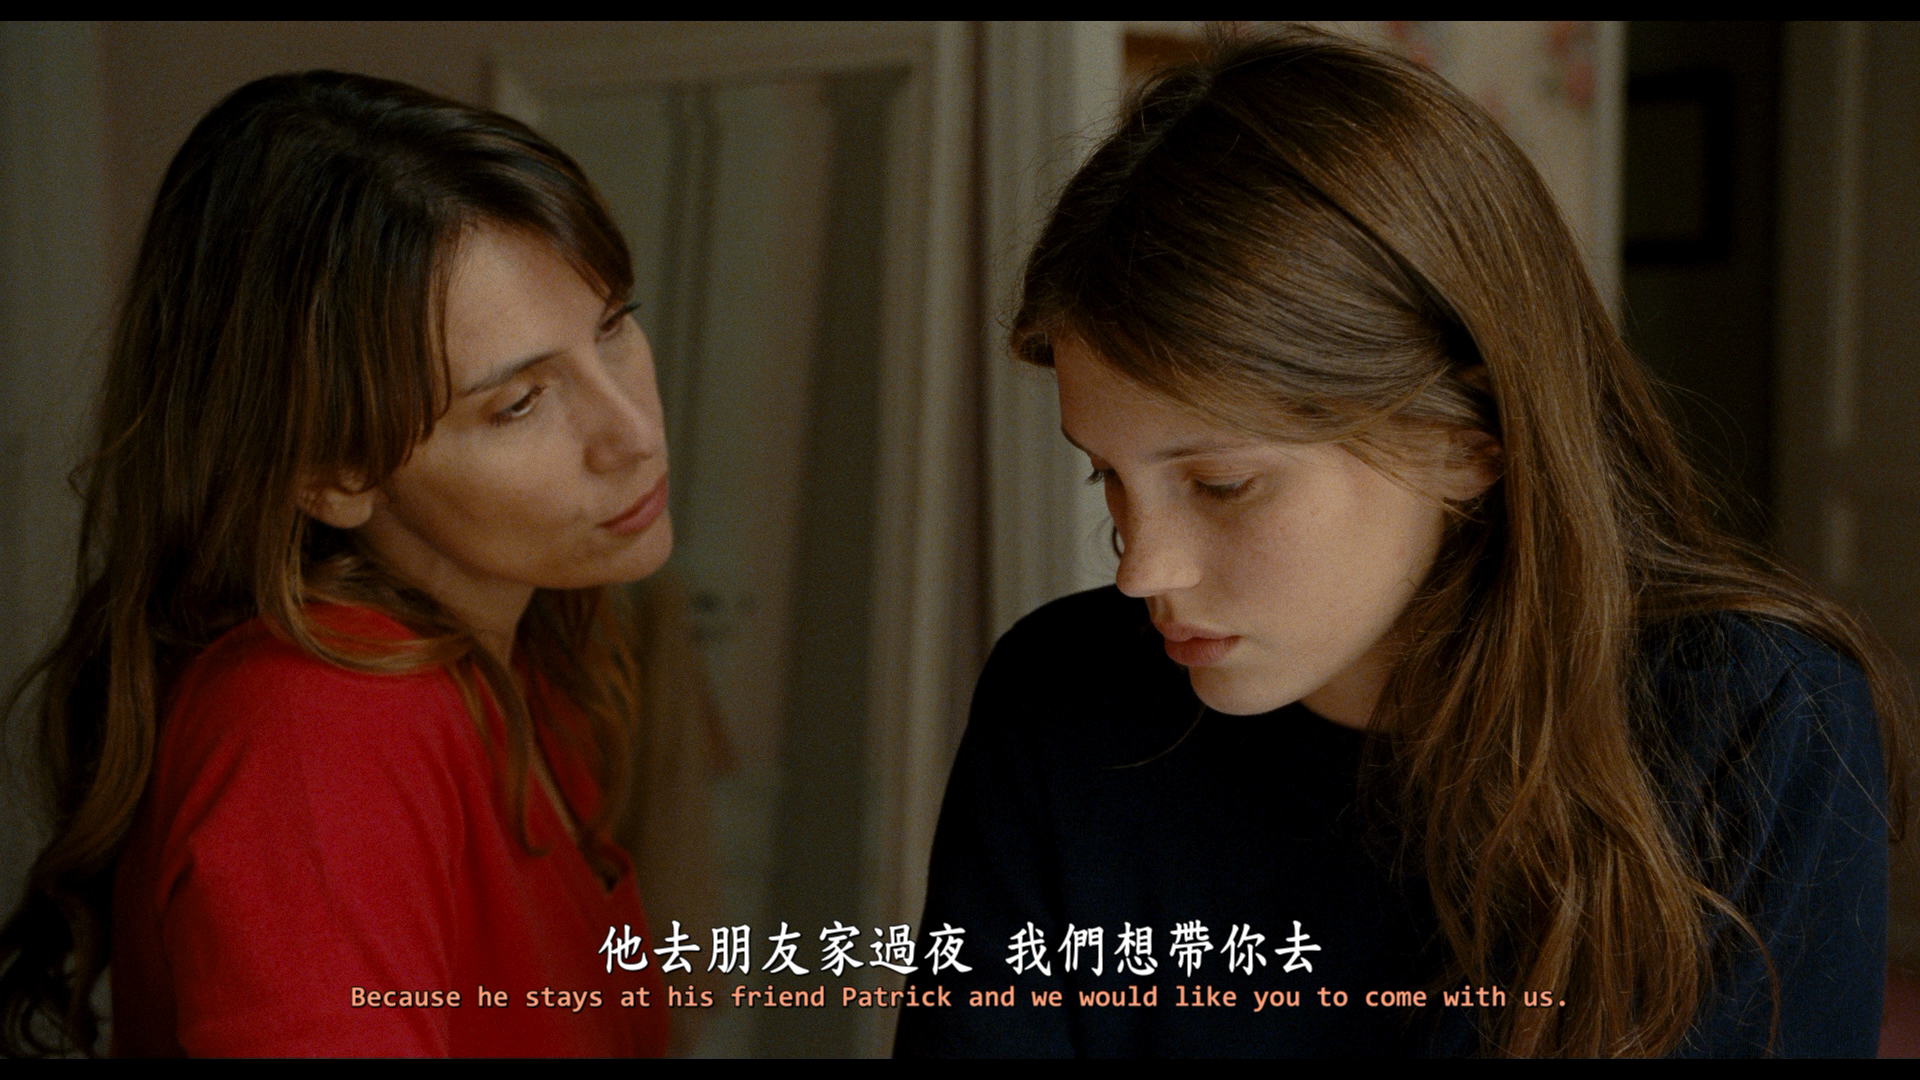 花容月貌 / 我要…17岁(港) / 美丽·诱惑(台) / 年轻与美貌 / 17岁[DIY简繁+简繁英双语字幕] Jeune & Jolie 2013 FRA 1080p Blu-ray AVC DTS-HD MA 5 1-IWUBEN@OurBits[33.68GB]-1.png